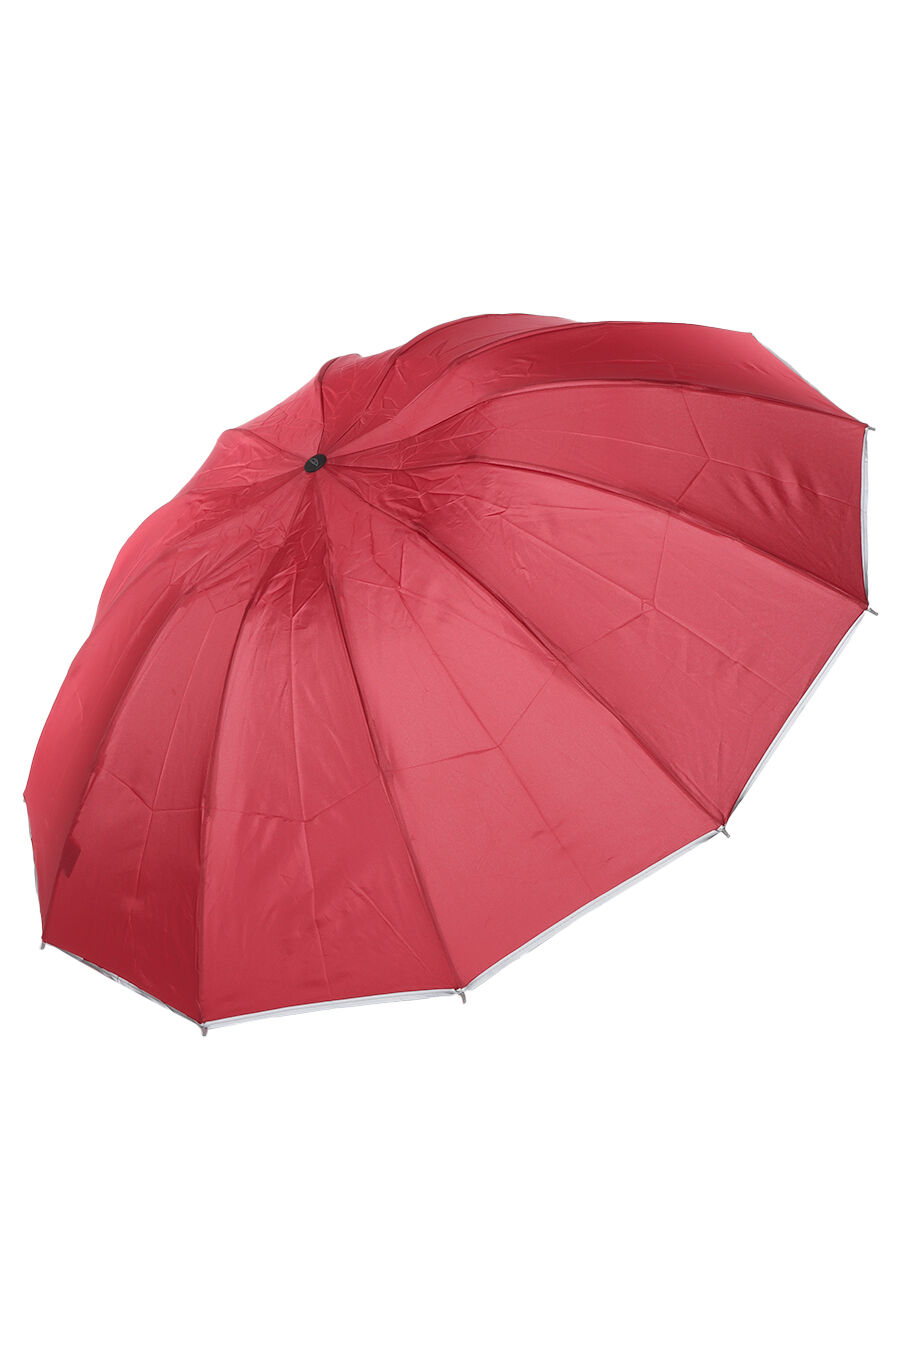 Зонт муж. Umbrella 6510-2 полный автомат (бордовый)